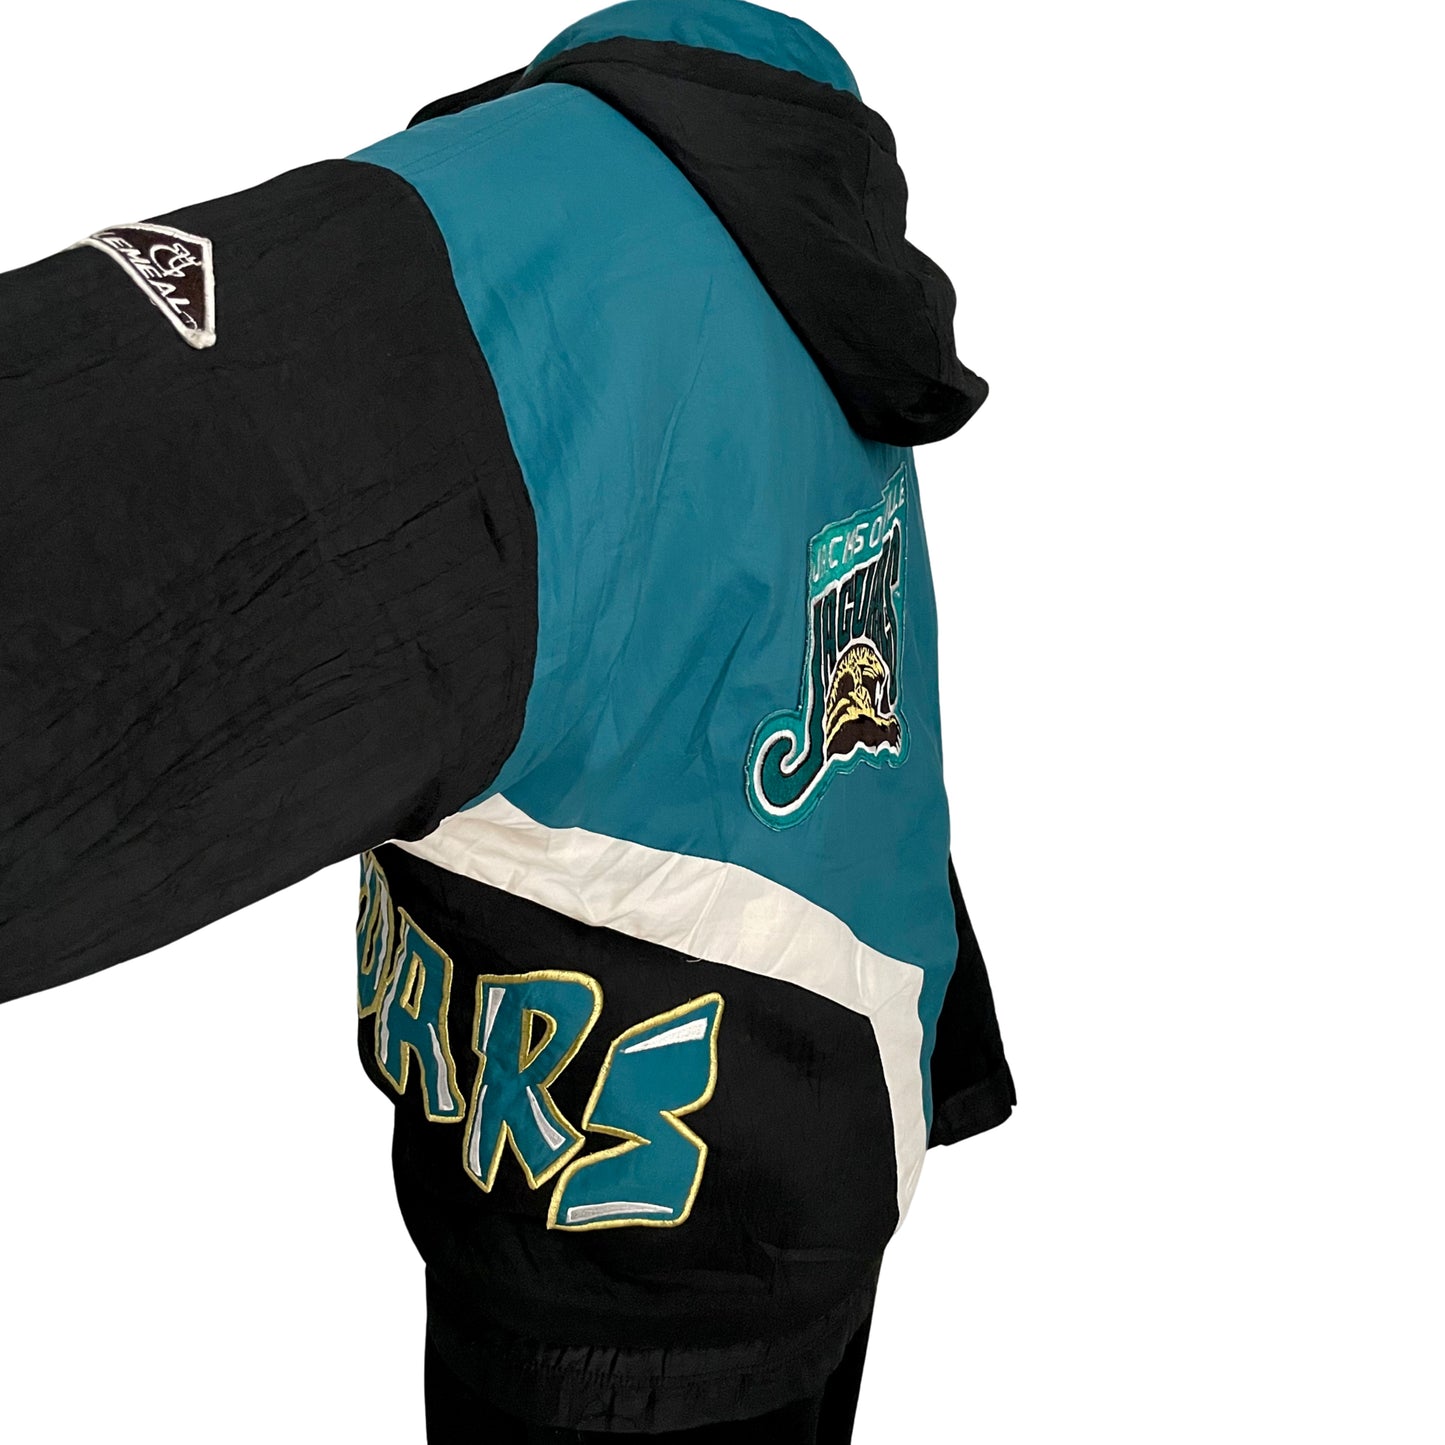 Vintage Jacksonville Jaguars RARE banned logo jacket size LARGE